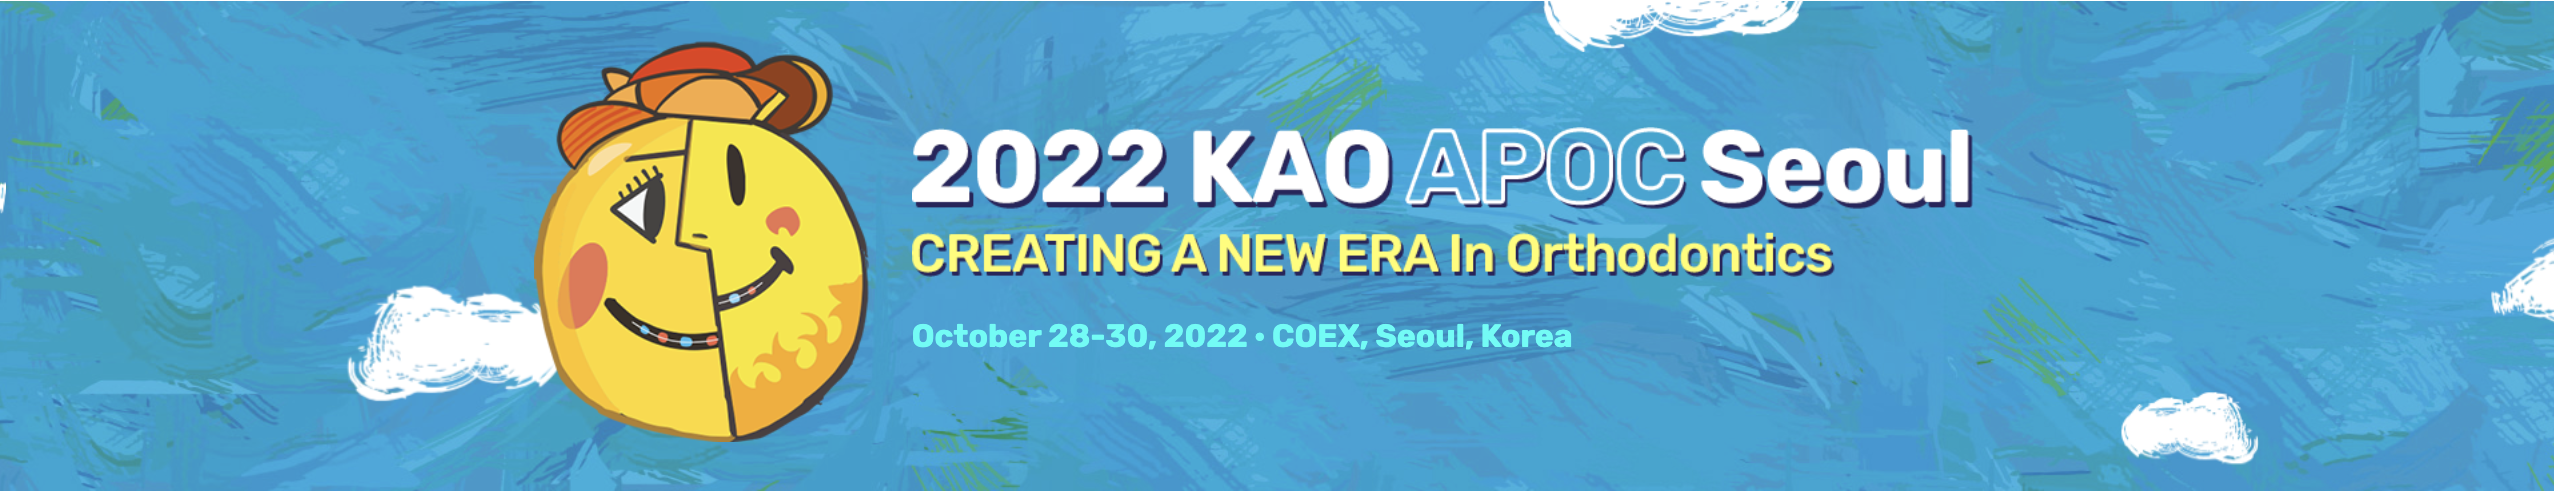 Hội nghị thường niên của Hội Chỉnh Nha Hàn Quốc (KAO) lần thứ 55 kết hợp với Hội nghị lần thứ 13 của Hội Chỉnh Nha châu Á – Thái Bình Dương (APOC) tại Seoul, Hàn Quốc từ ngày 28 đến 30/10/2022.